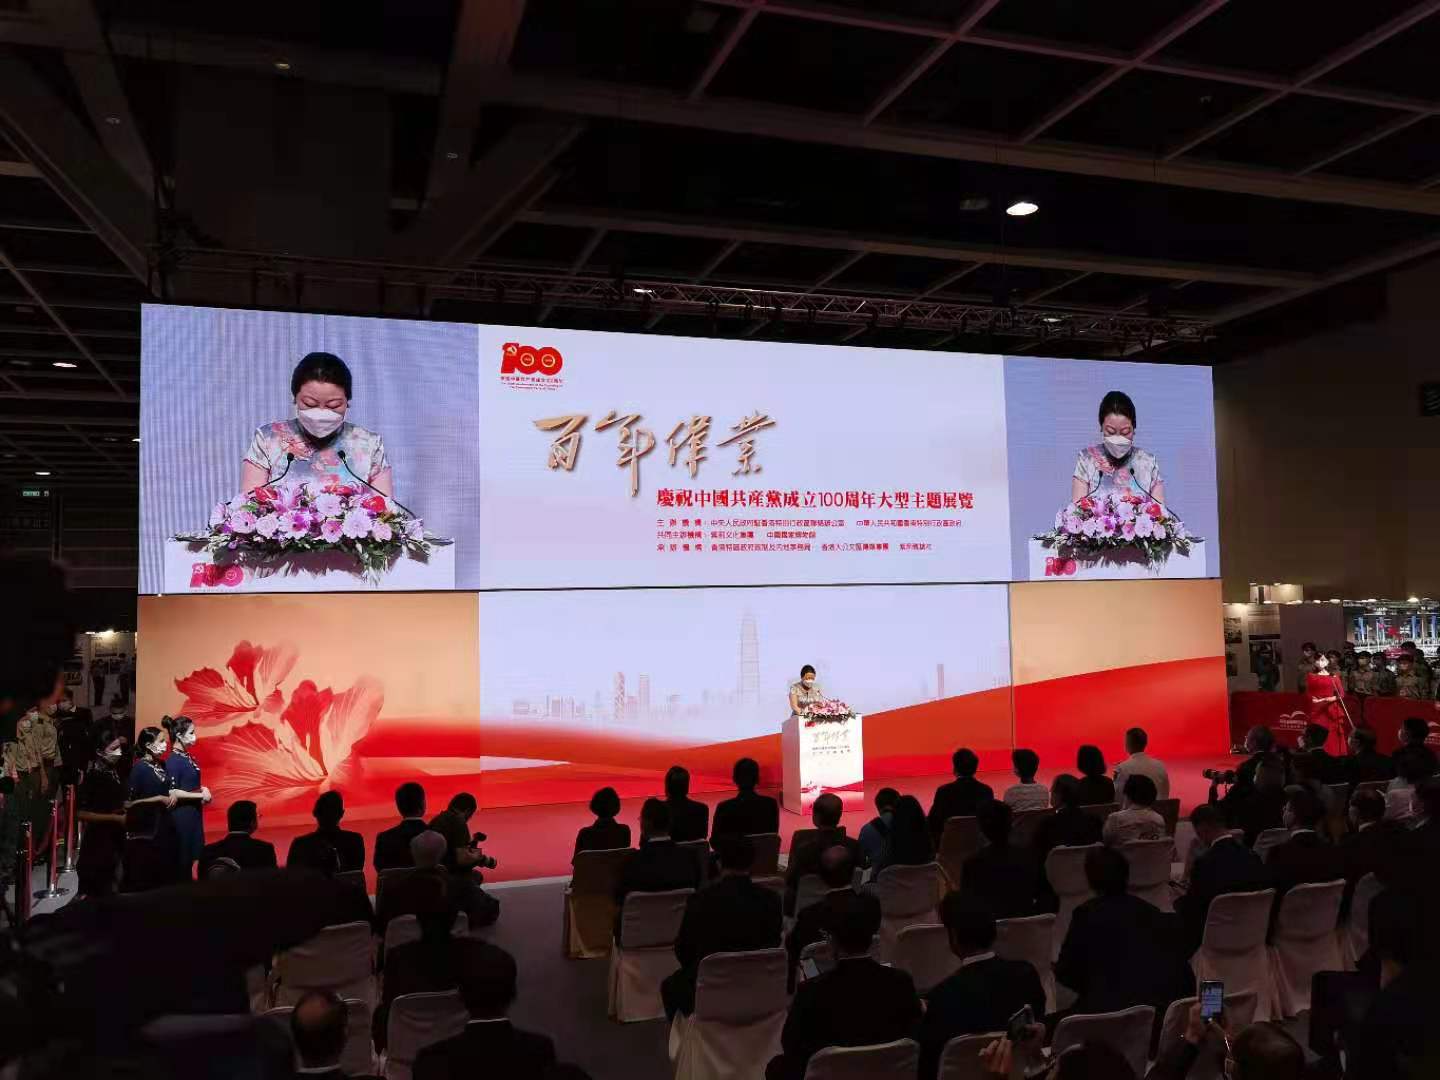 香港“百年伟业——庆祝中国共产党成立100周年大型主题展览”举行开幕式